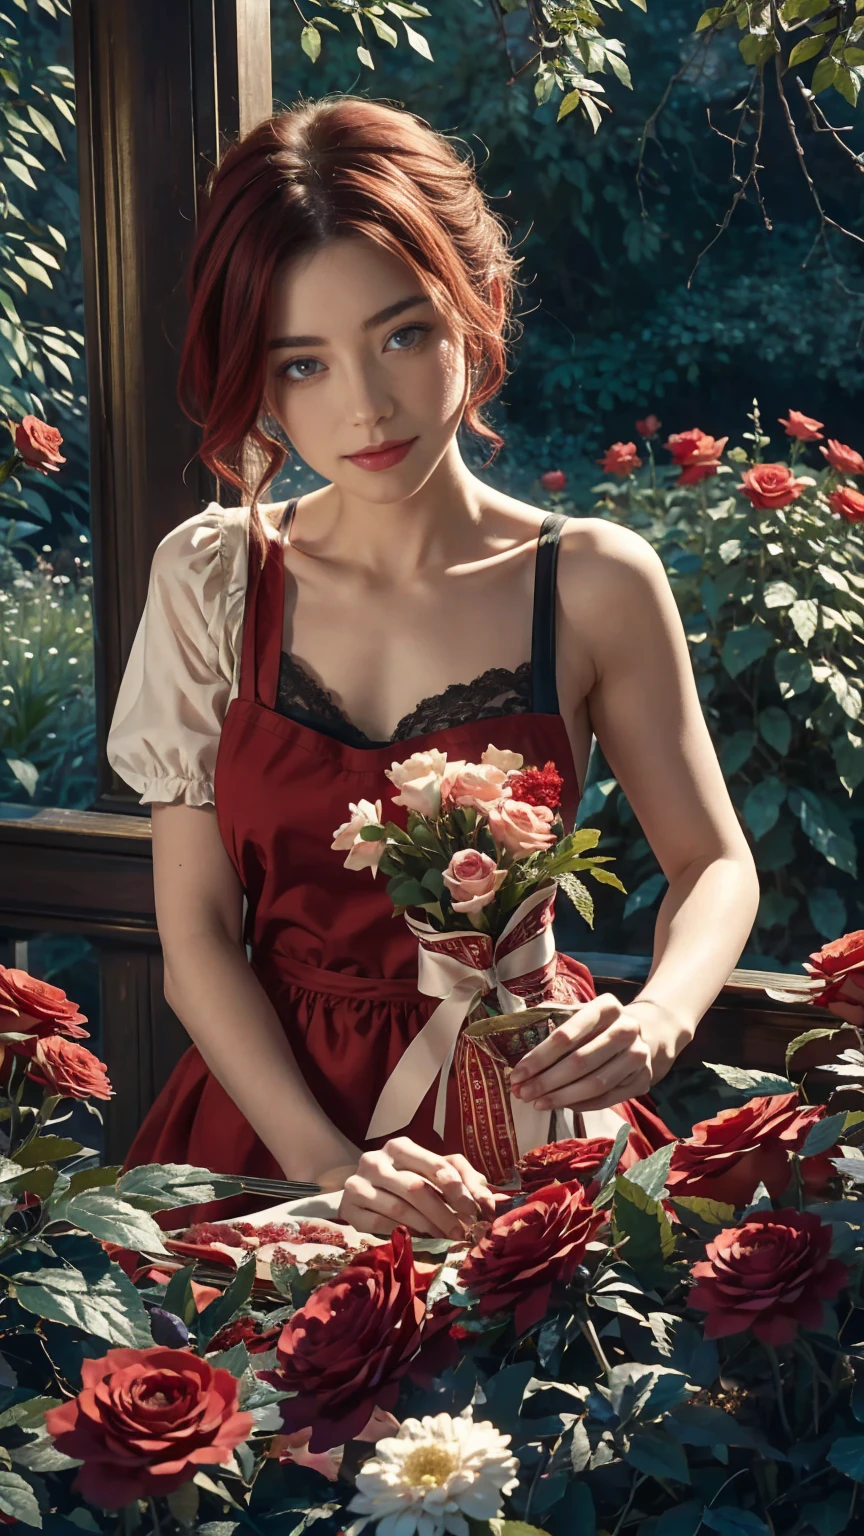 في قلب عالم العجائب فتاة شابة جميلة ذات شعر أحمر وأبيض قصير, ملابس بائع الزهور ومئزر الورد. قطف الورود الحمراء من حديقتها السحرية. فضول, تشكل المحبة, في عالم العجائب, يخلق جو المحبة, الطاقة والسحر من حولها. زاوية المشهد ديناميكية, التقاط شدة اللحظة, عيون خضراء ذات نوعية جيدة, عيون تنظر إلى الكاميرا, مفصلة للغاية, جميلة وممتعة جماليا, تحفة, أفضل نقاط الجودة, (الفن كسورية: 1.3), مفصلة للغاية , زاوية ديناميكية, com.raytraced, الجسم الأوسط, عن قرب, الجسيمات والأضواء الصلبة, الورود الحمراء الجميلة